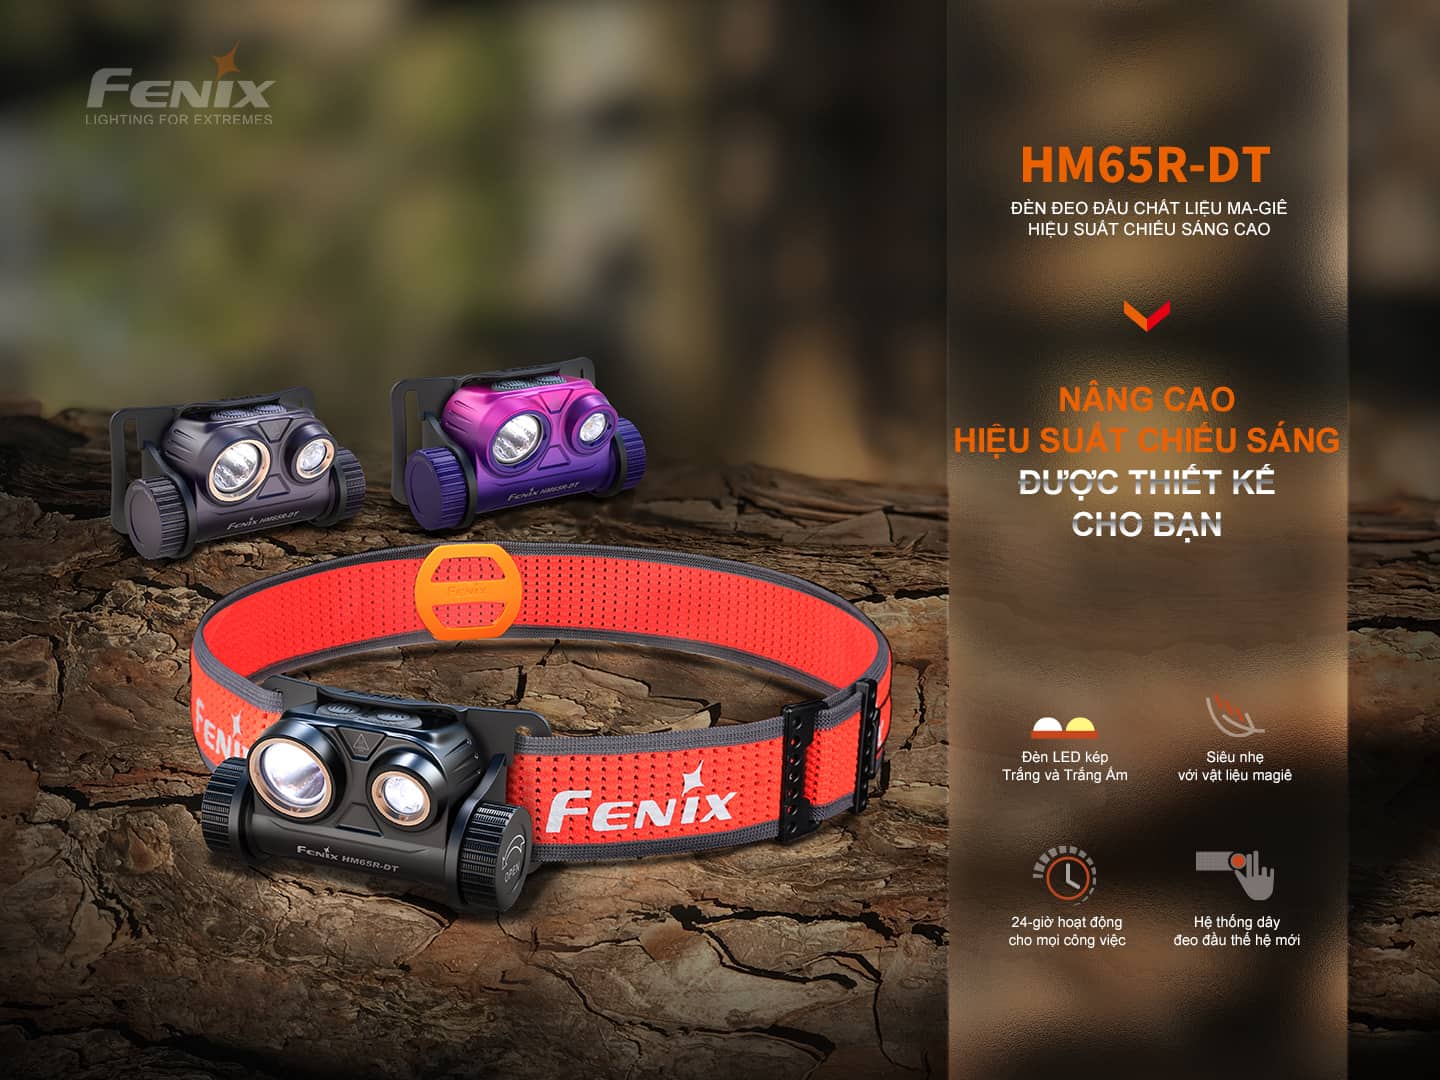 Đèn pin đội đầu Fenix HM65R-DT nâng cao hiệu suất chiếu sáng với đèn chiếu xa kép.